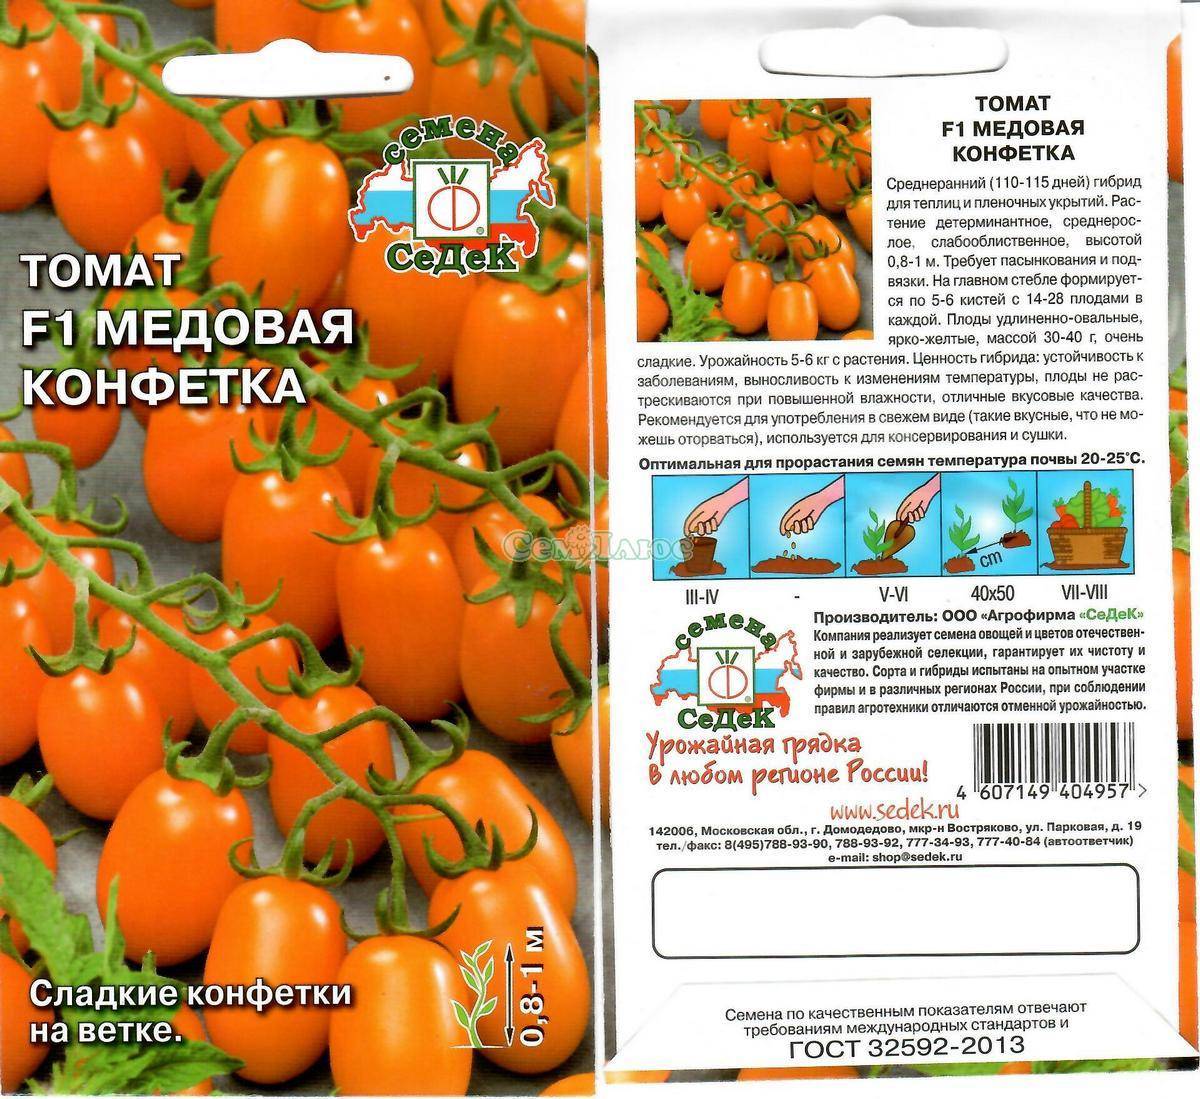 Описание томата Медовая конфетка, его характеристики и особенности выращивания